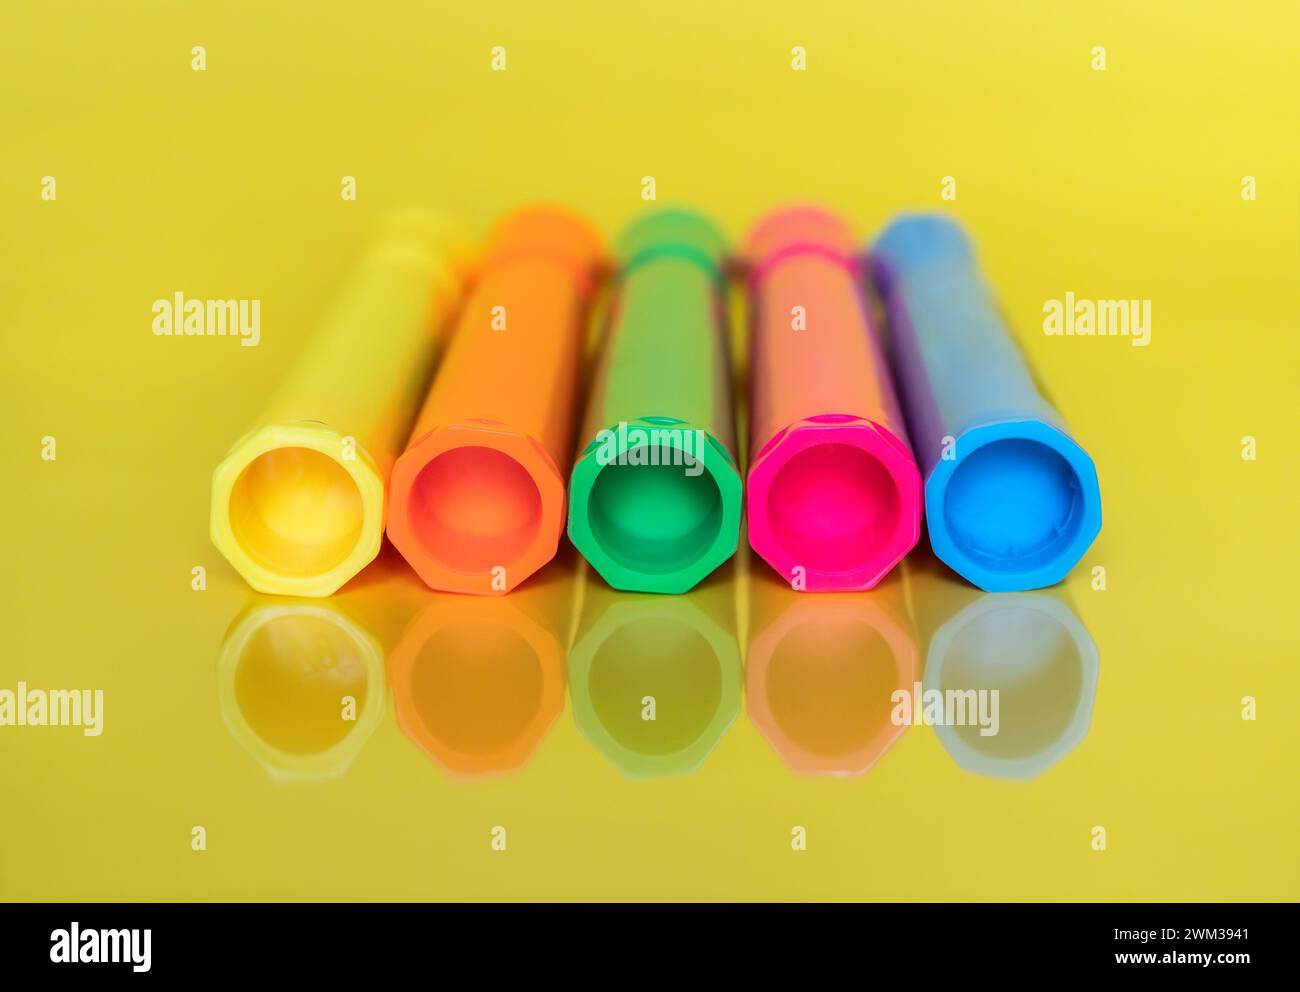 Marqueurs de surligneur fluorescents colorés sur fond jaune vif Banque D'Images